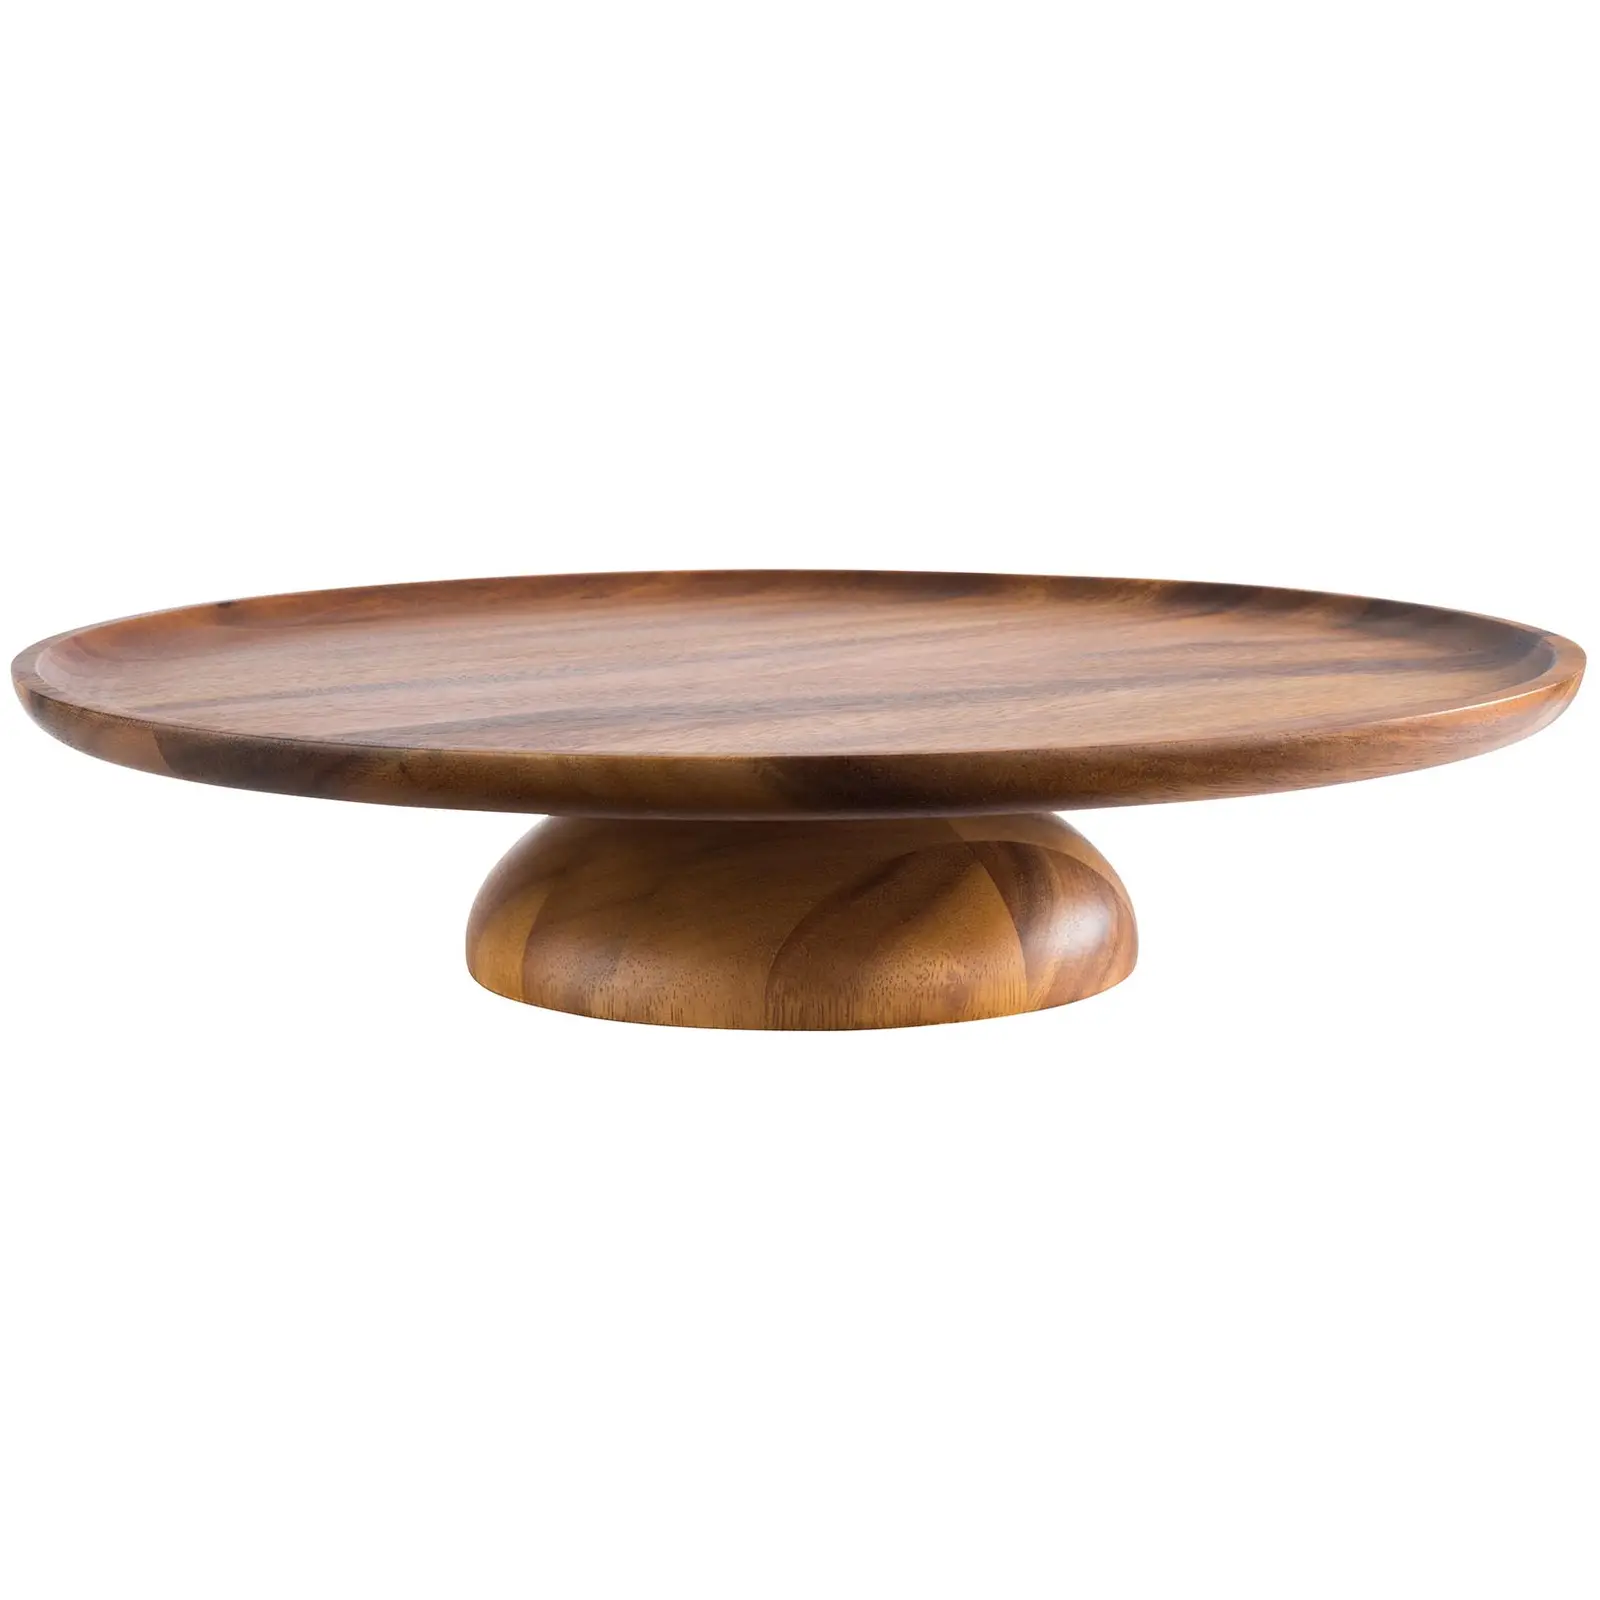 Tortenplatte - Akazienholz, geölt - Durchmesser: 38,5 cm - Höhe: 8 cm